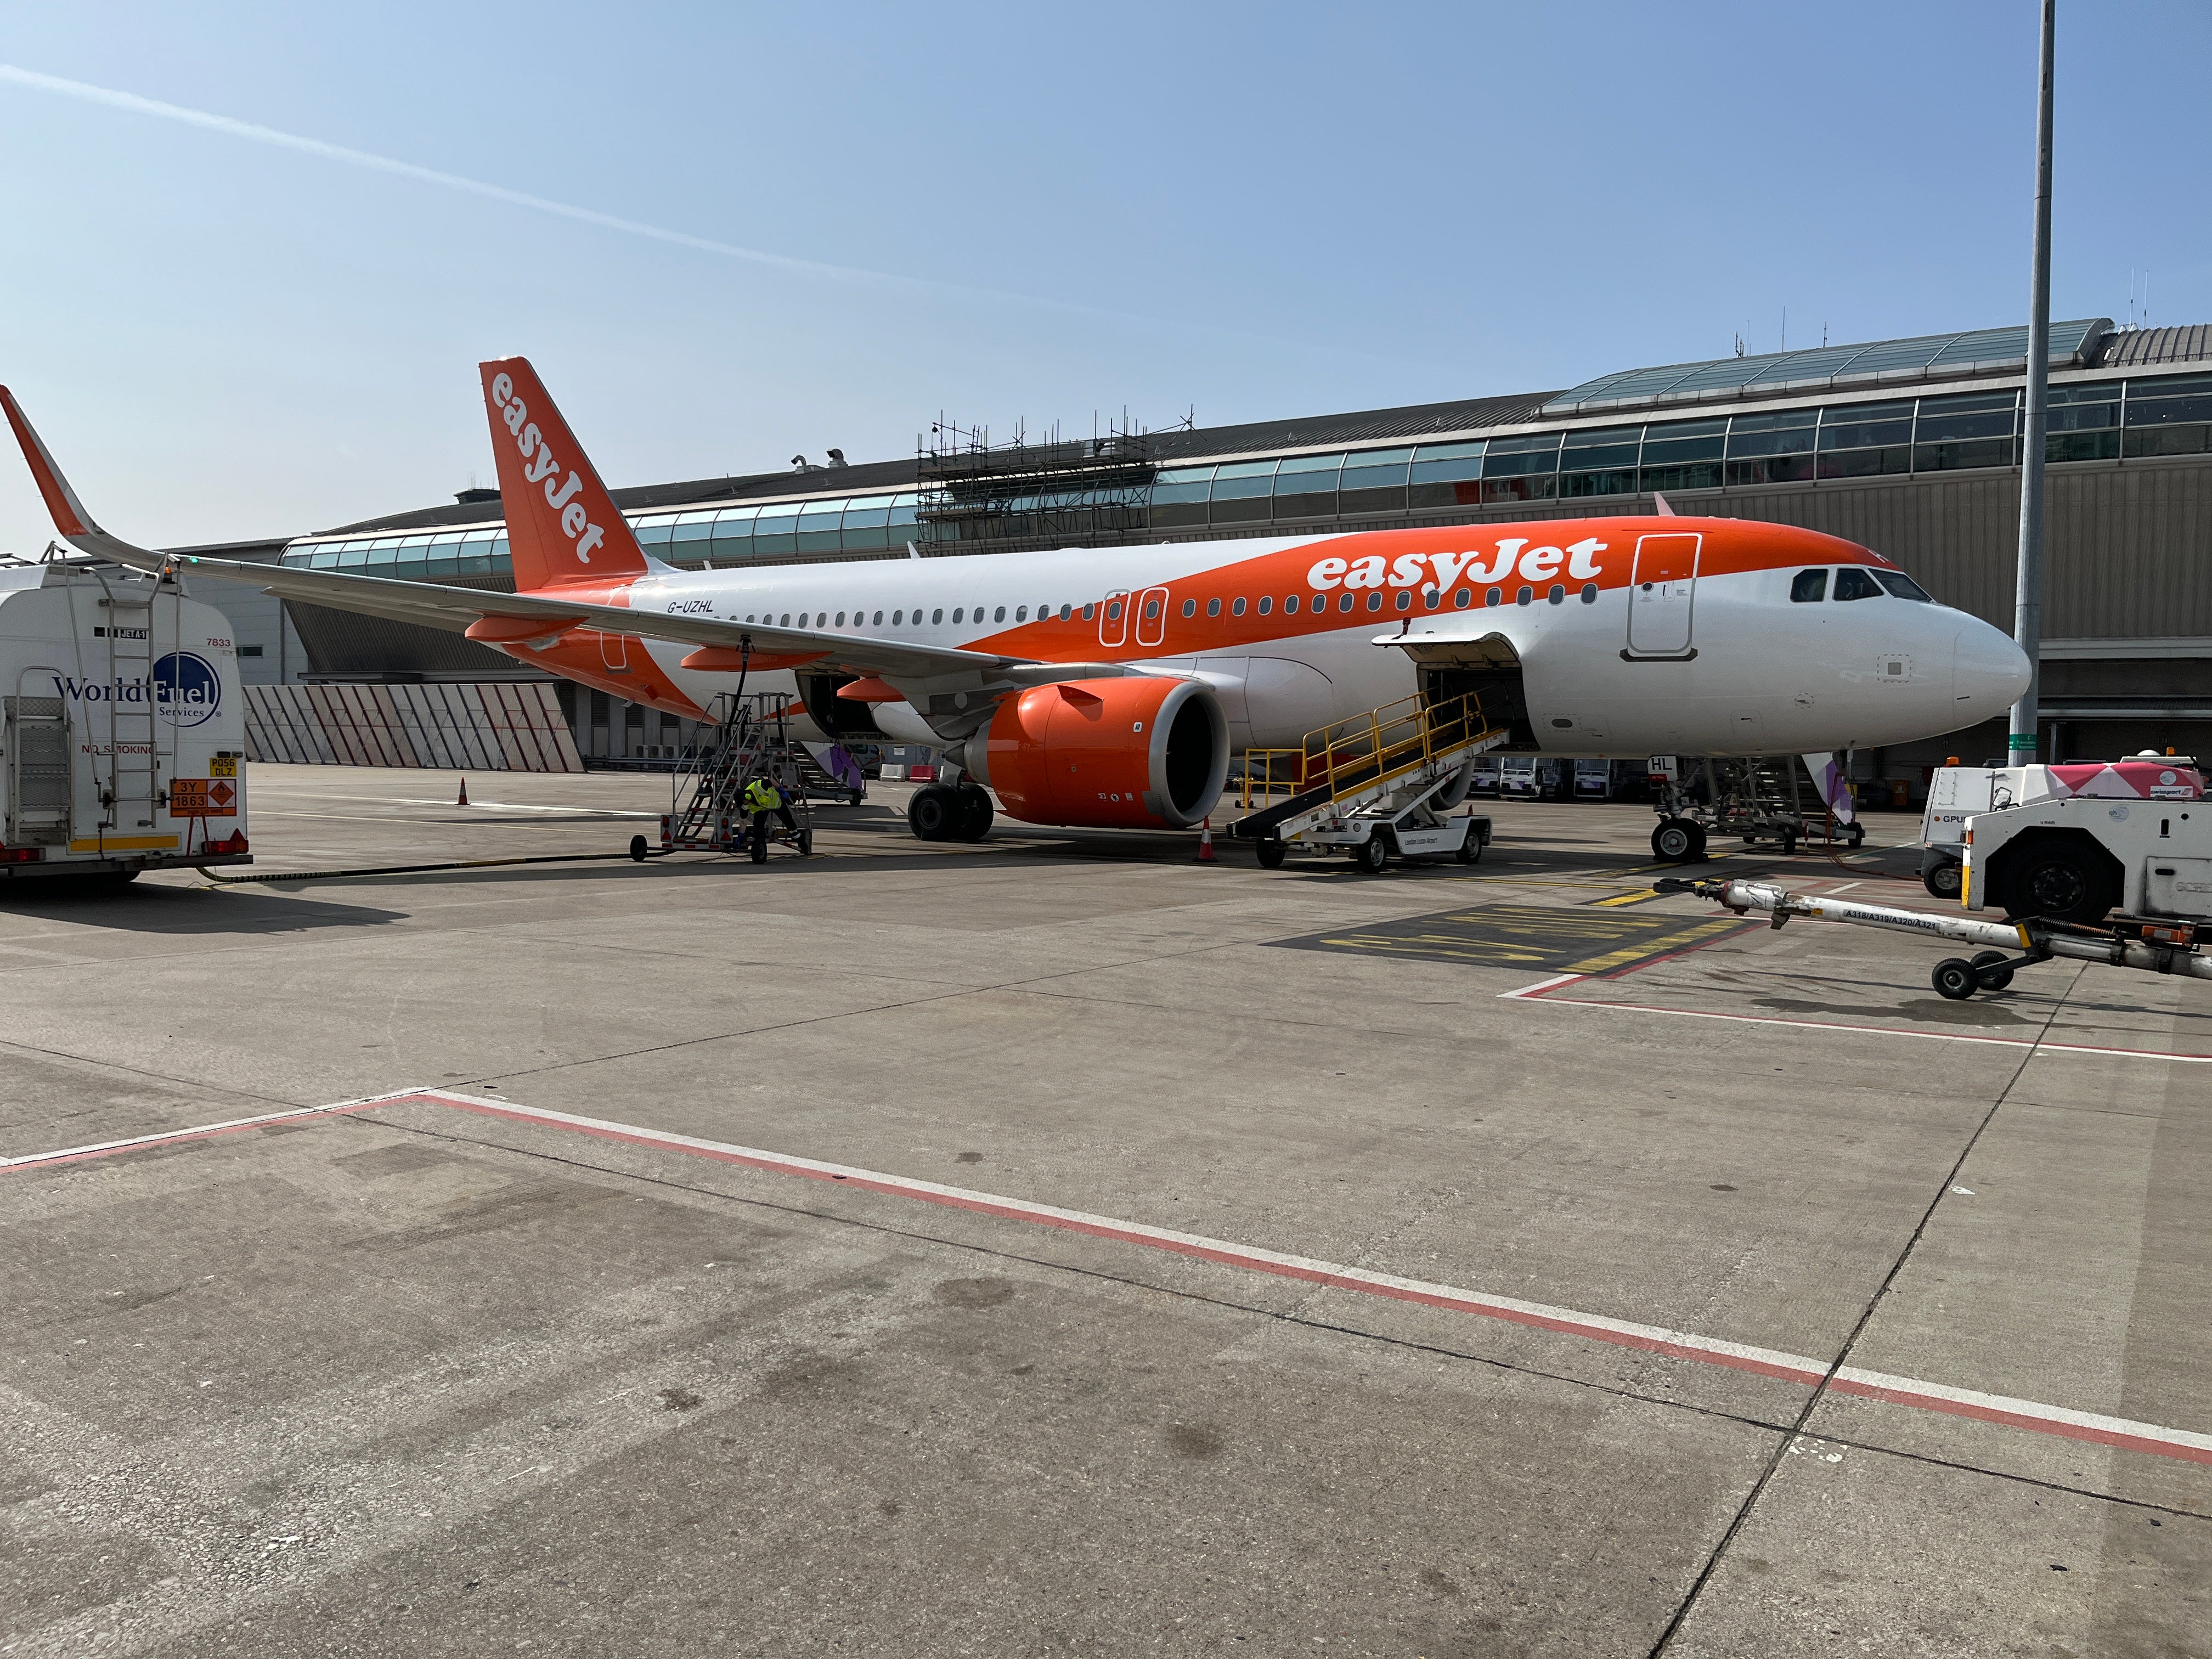 Parada en tierra: Airbus A320 de easyJet en el aeropuerto de Luton, sede de la aerolínea